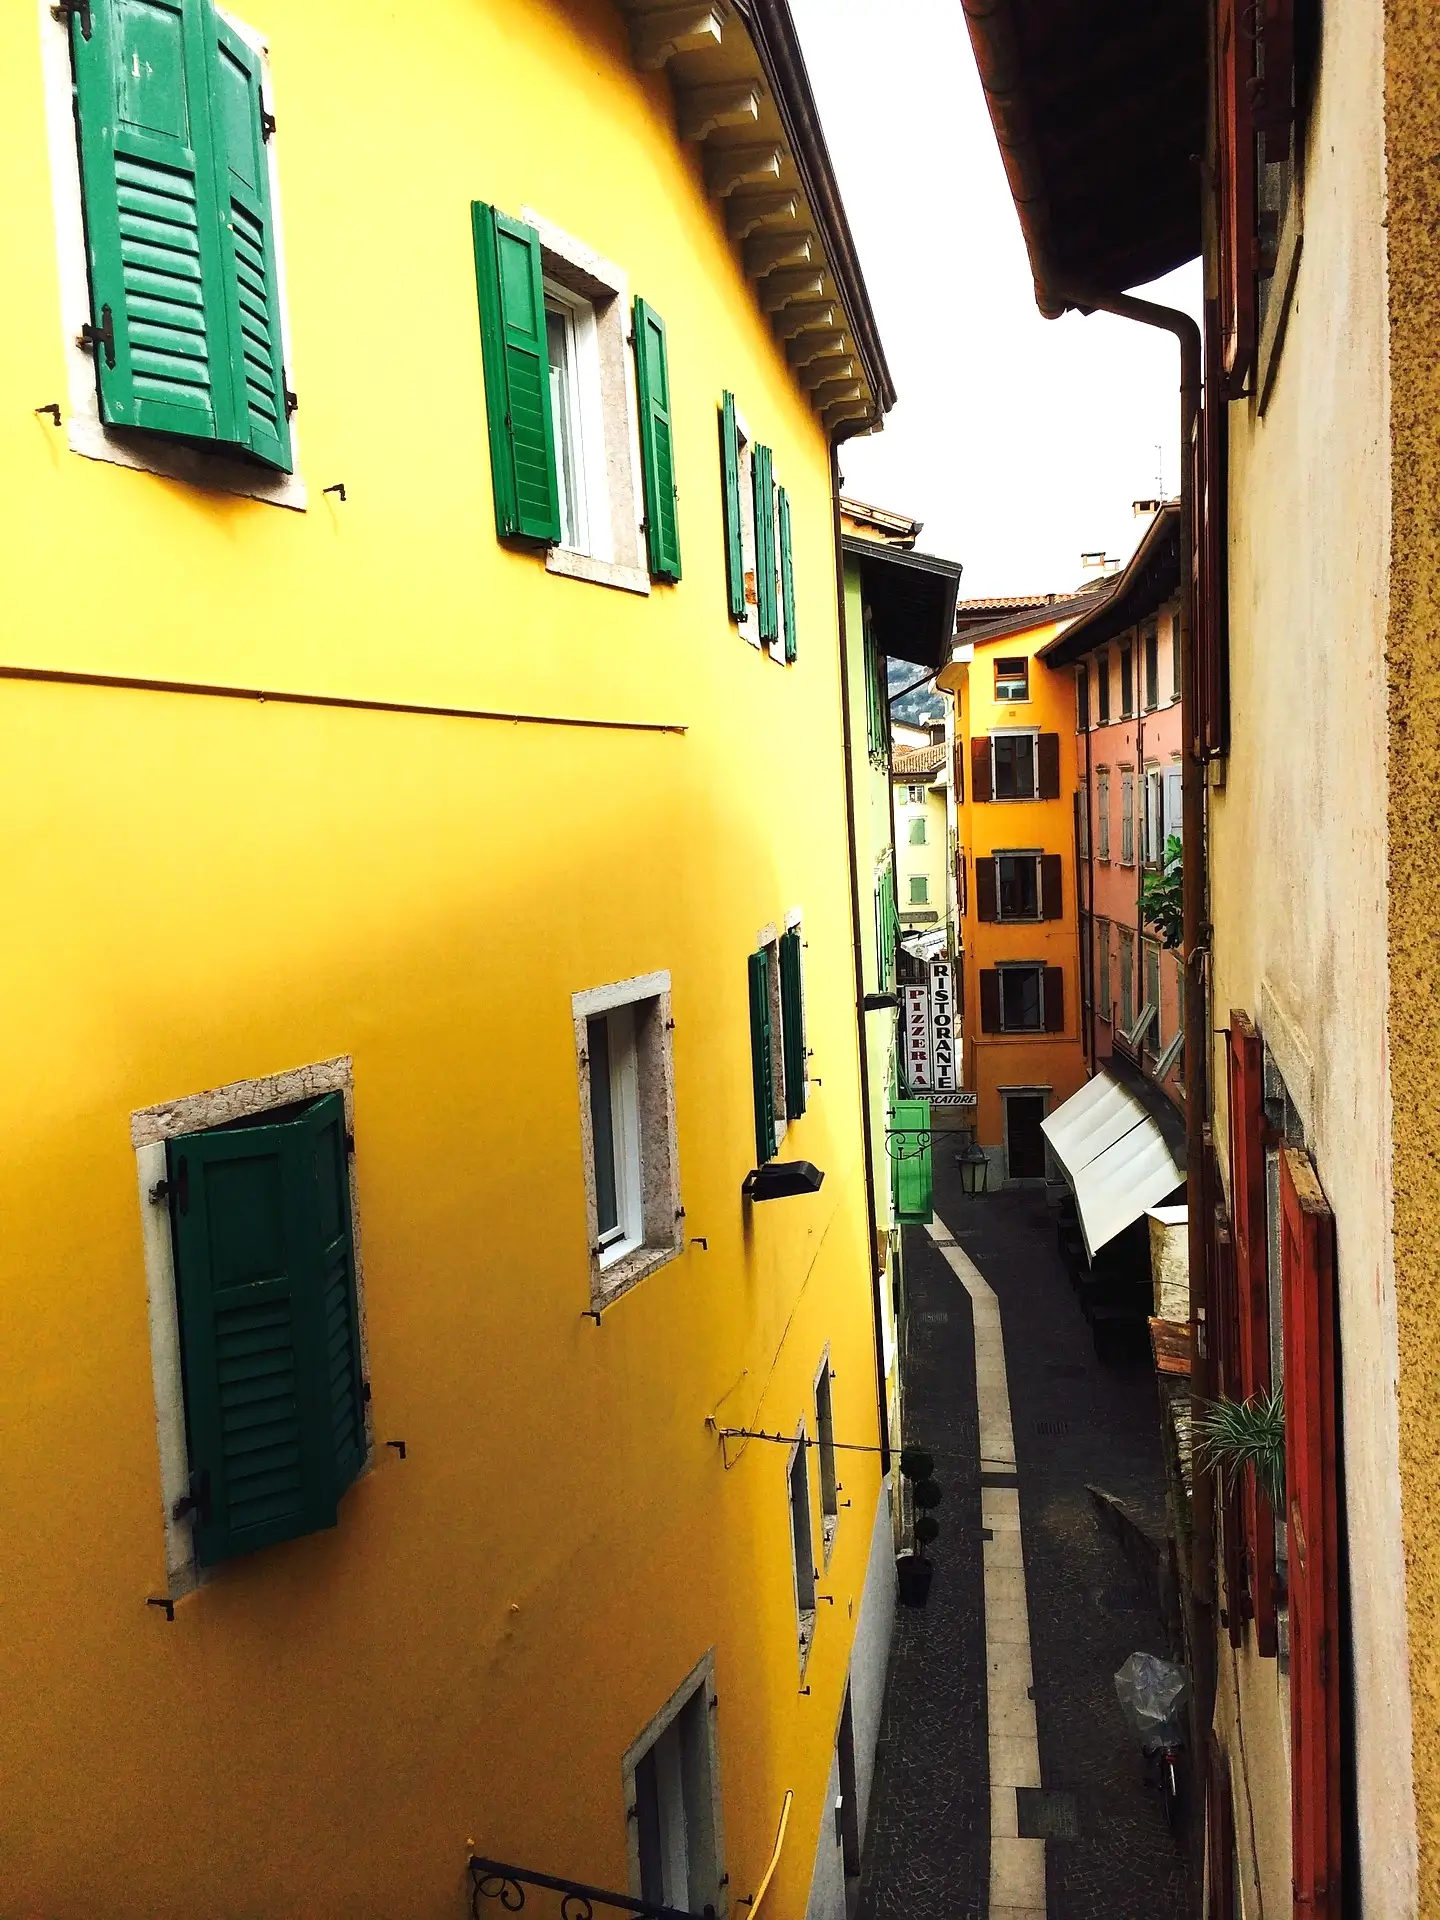 Torbole sul Garda: wat te doen en zien